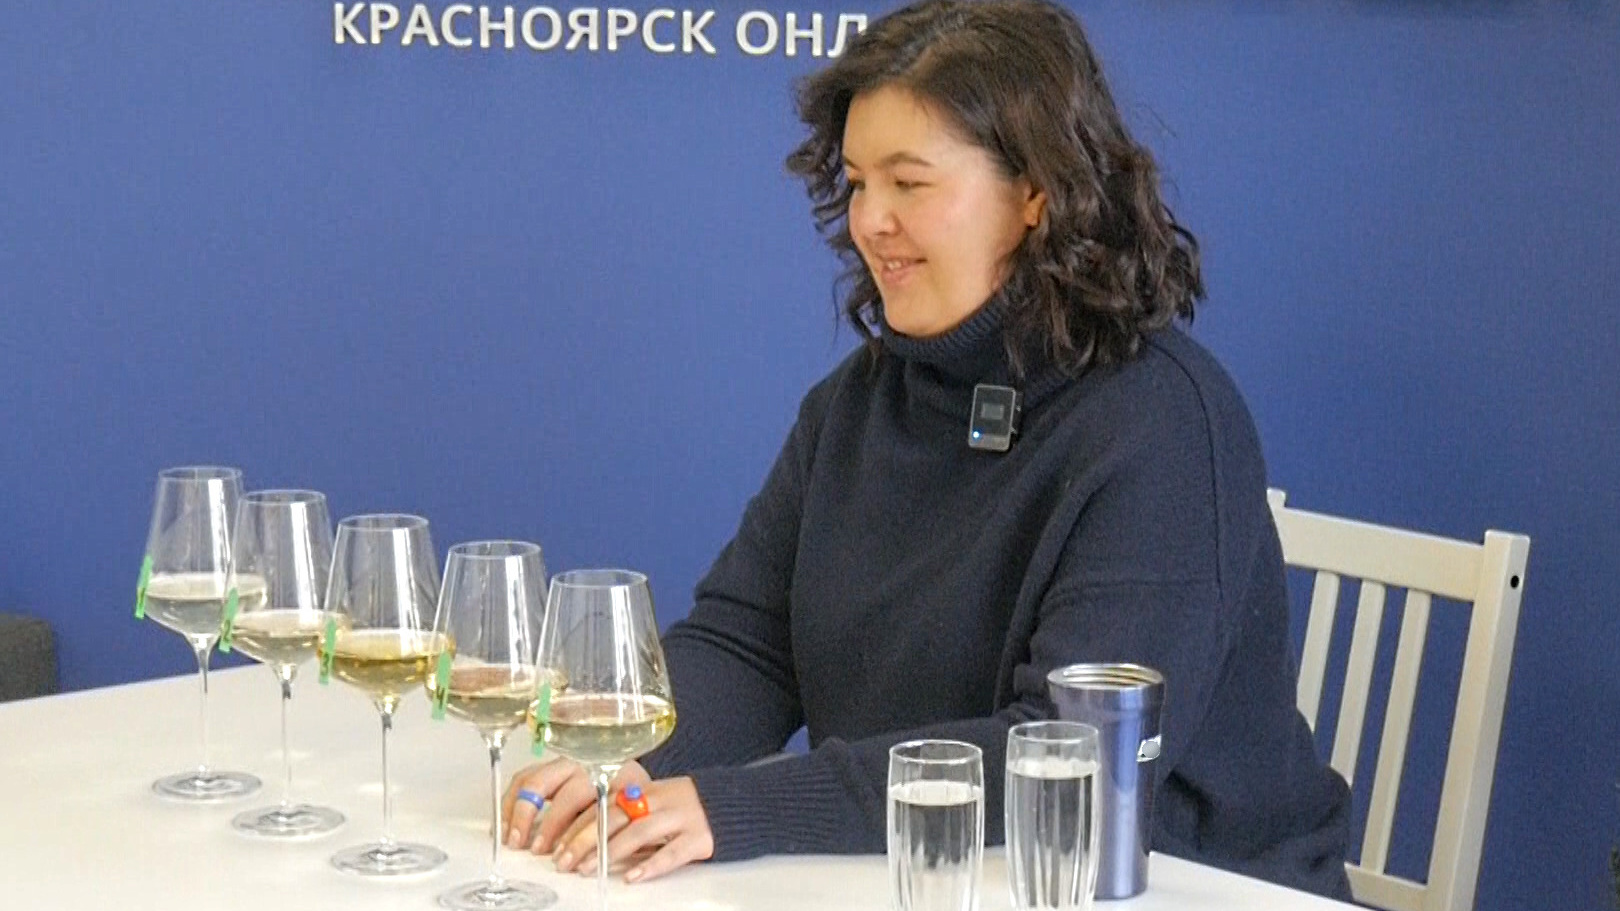 Кислятина vs сахар. Можно ли купить хорошее шампанское за 300–600 рублей? Проверяем вместе с сомелье